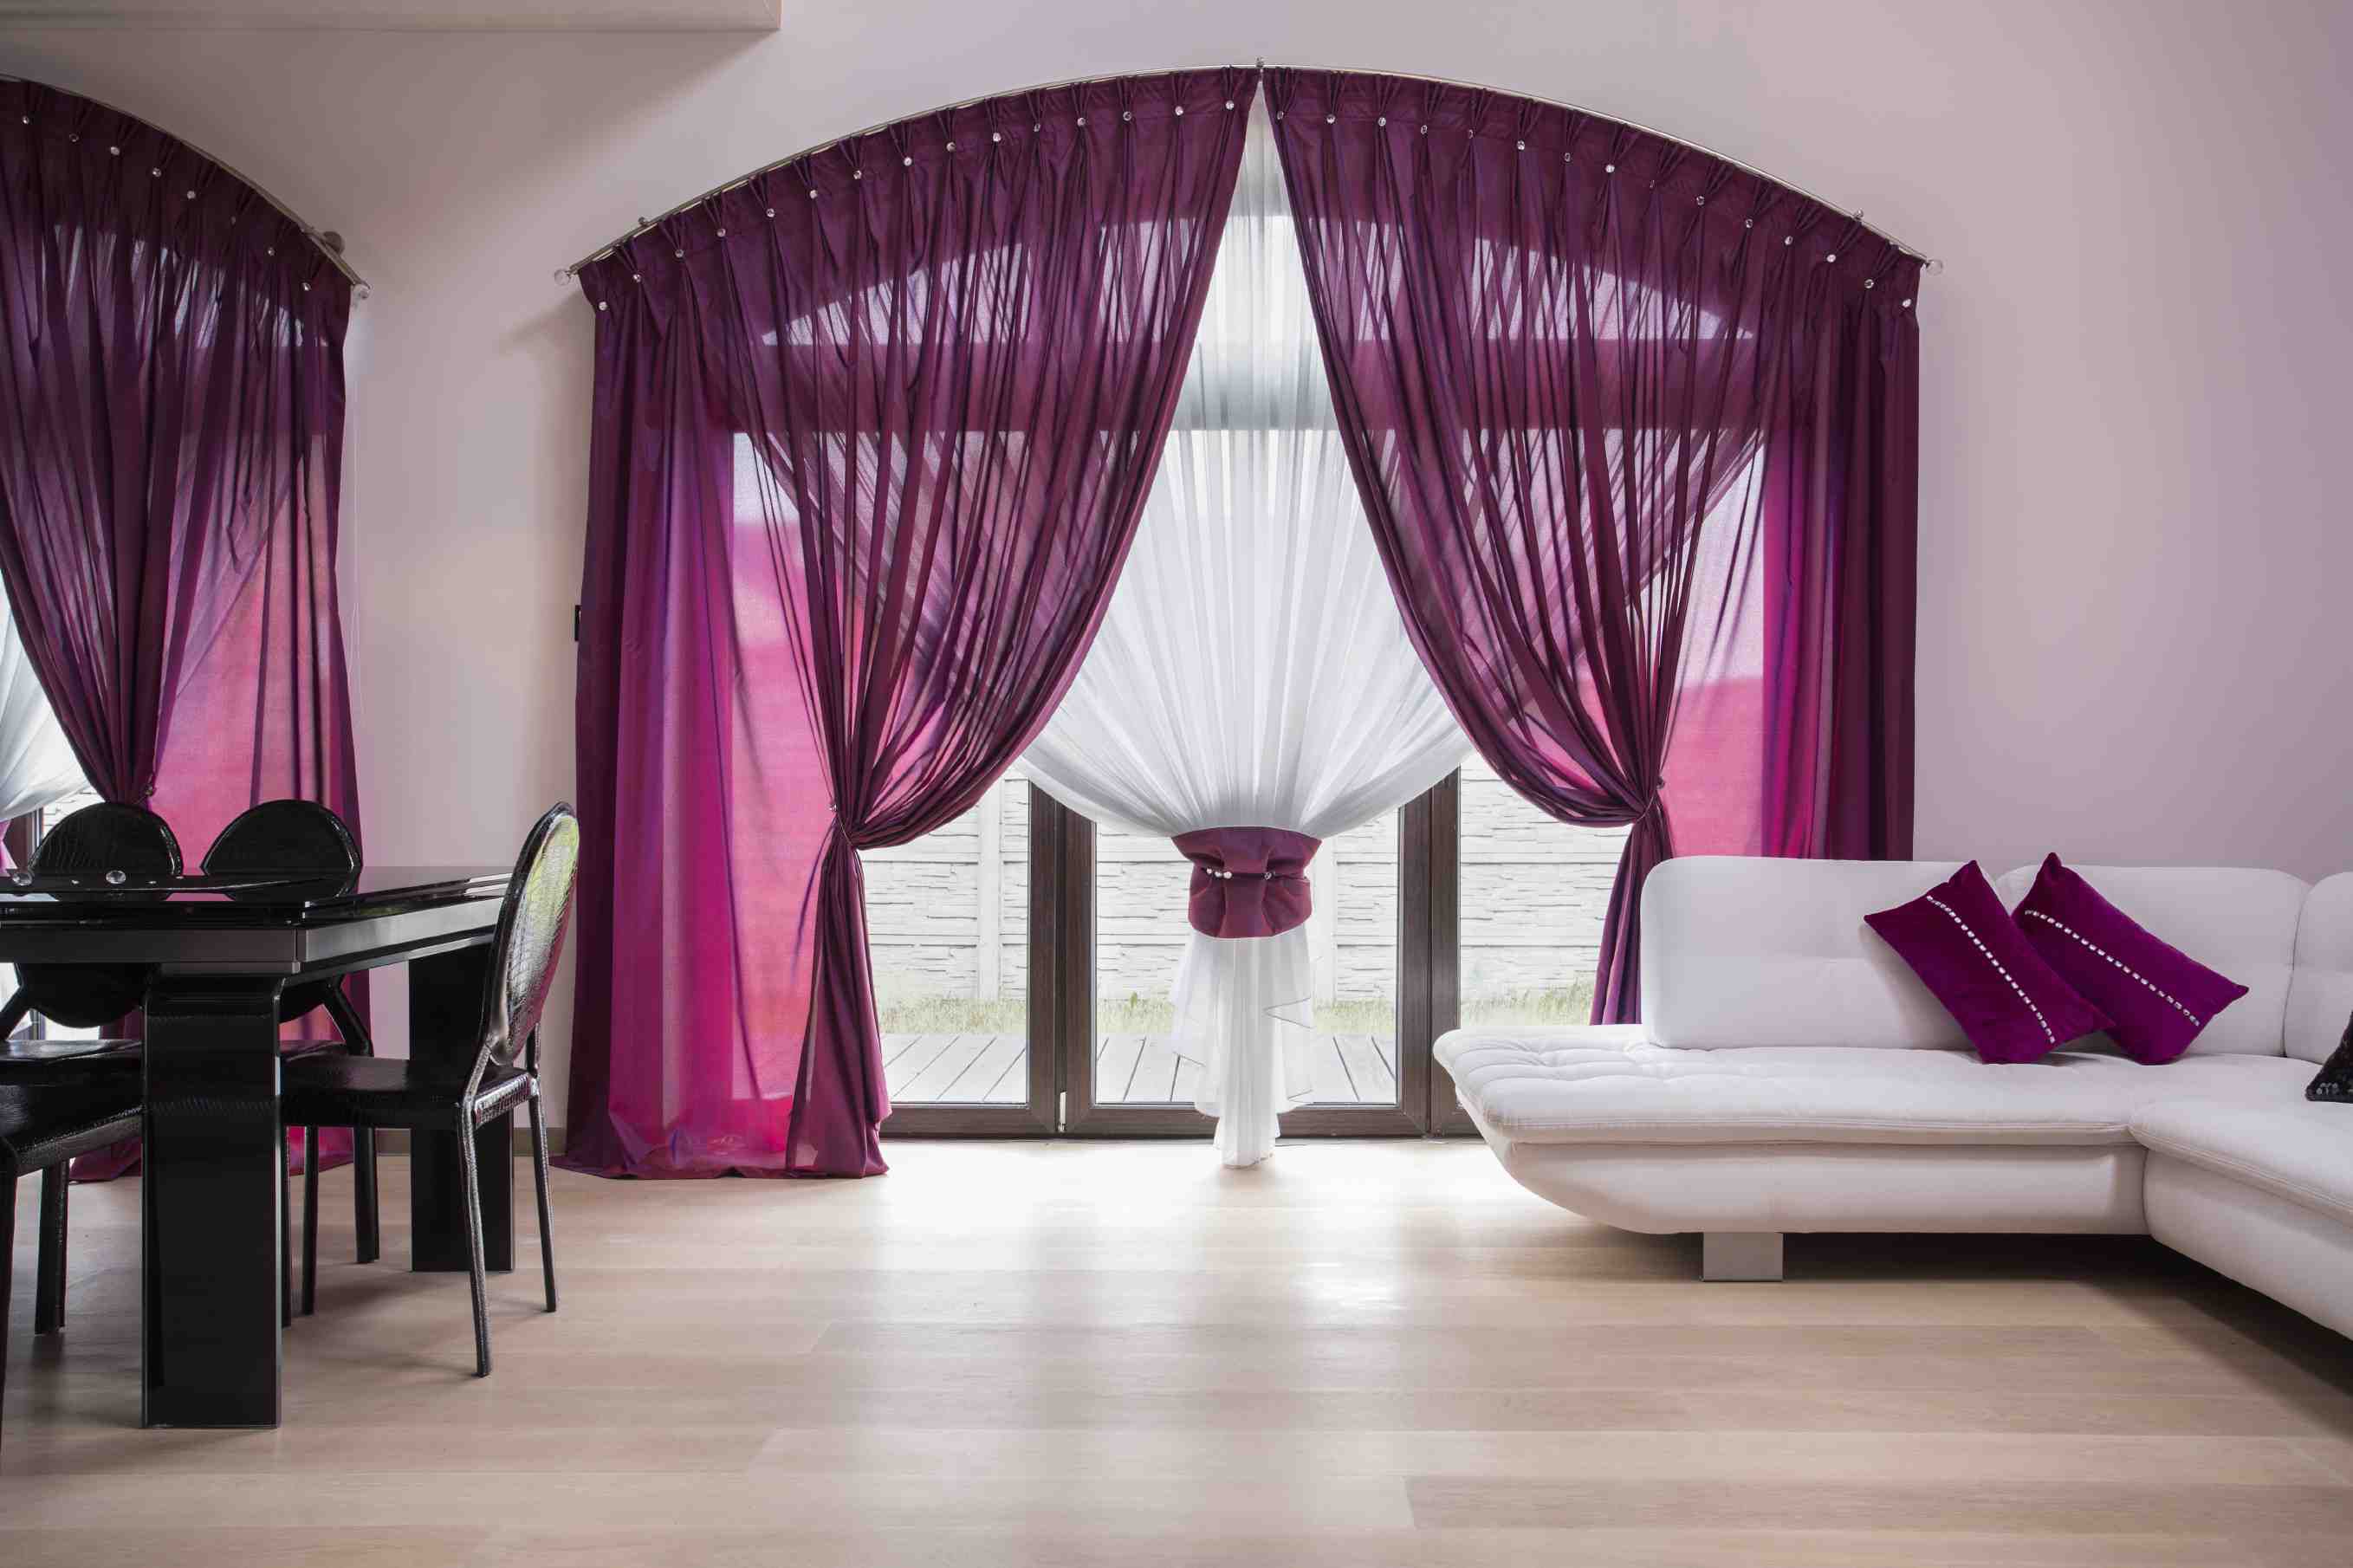 oficina alzapaños para cortinas trenzadas Beige, 4 decoración de hoteles Andiker Alzapaños magnéticos para cortinas cómodos accesorio para casa 